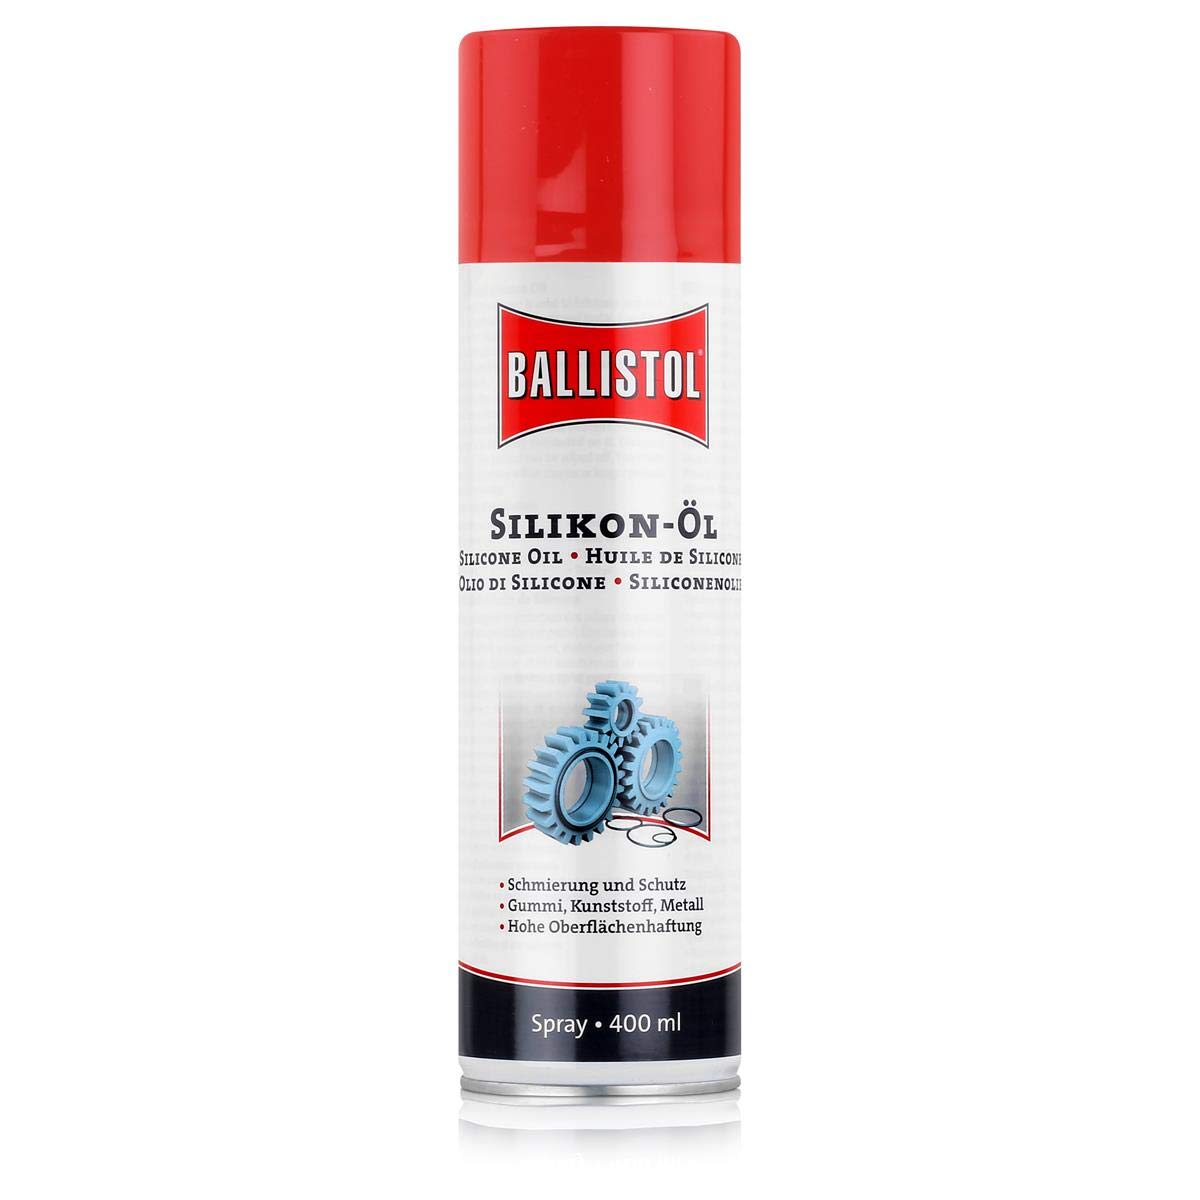 BALLISTOL 25307 Silikon-Öl 400ml Spray – Mineralöl-freie Schmierung für Gummi, Polymere, Plastik, Metalle - Säurefrei von BALLISTOL